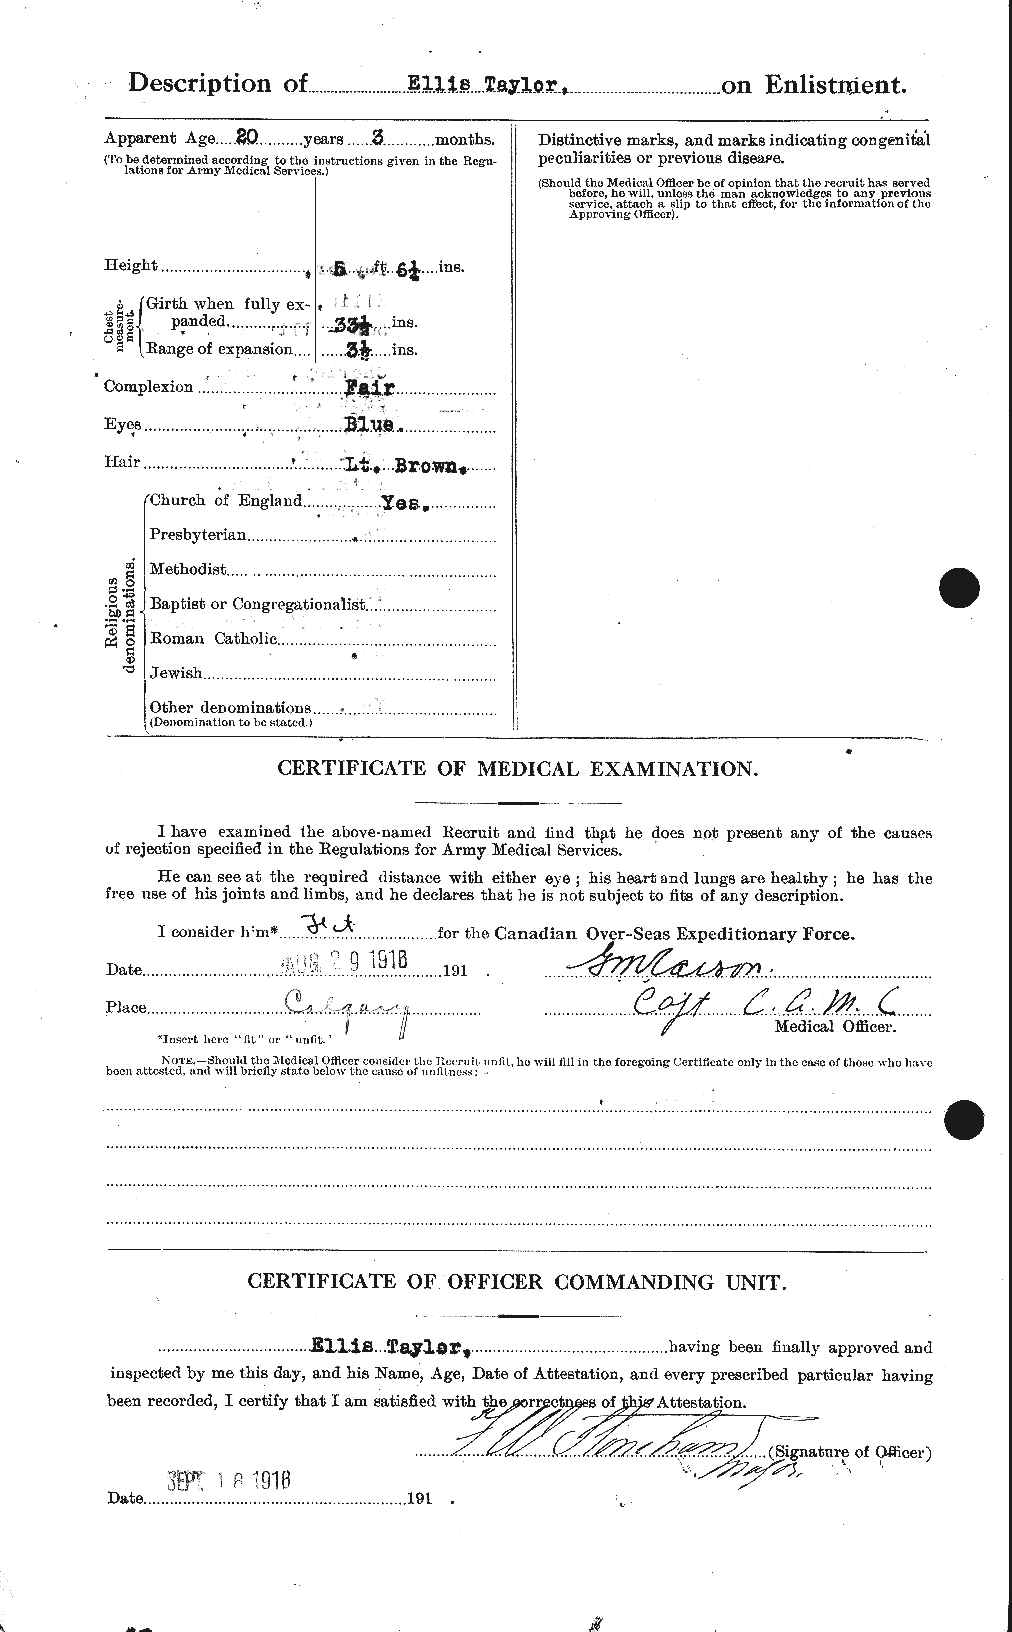 Dossiers du Personnel de la Première Guerre mondiale - CEC 627348b